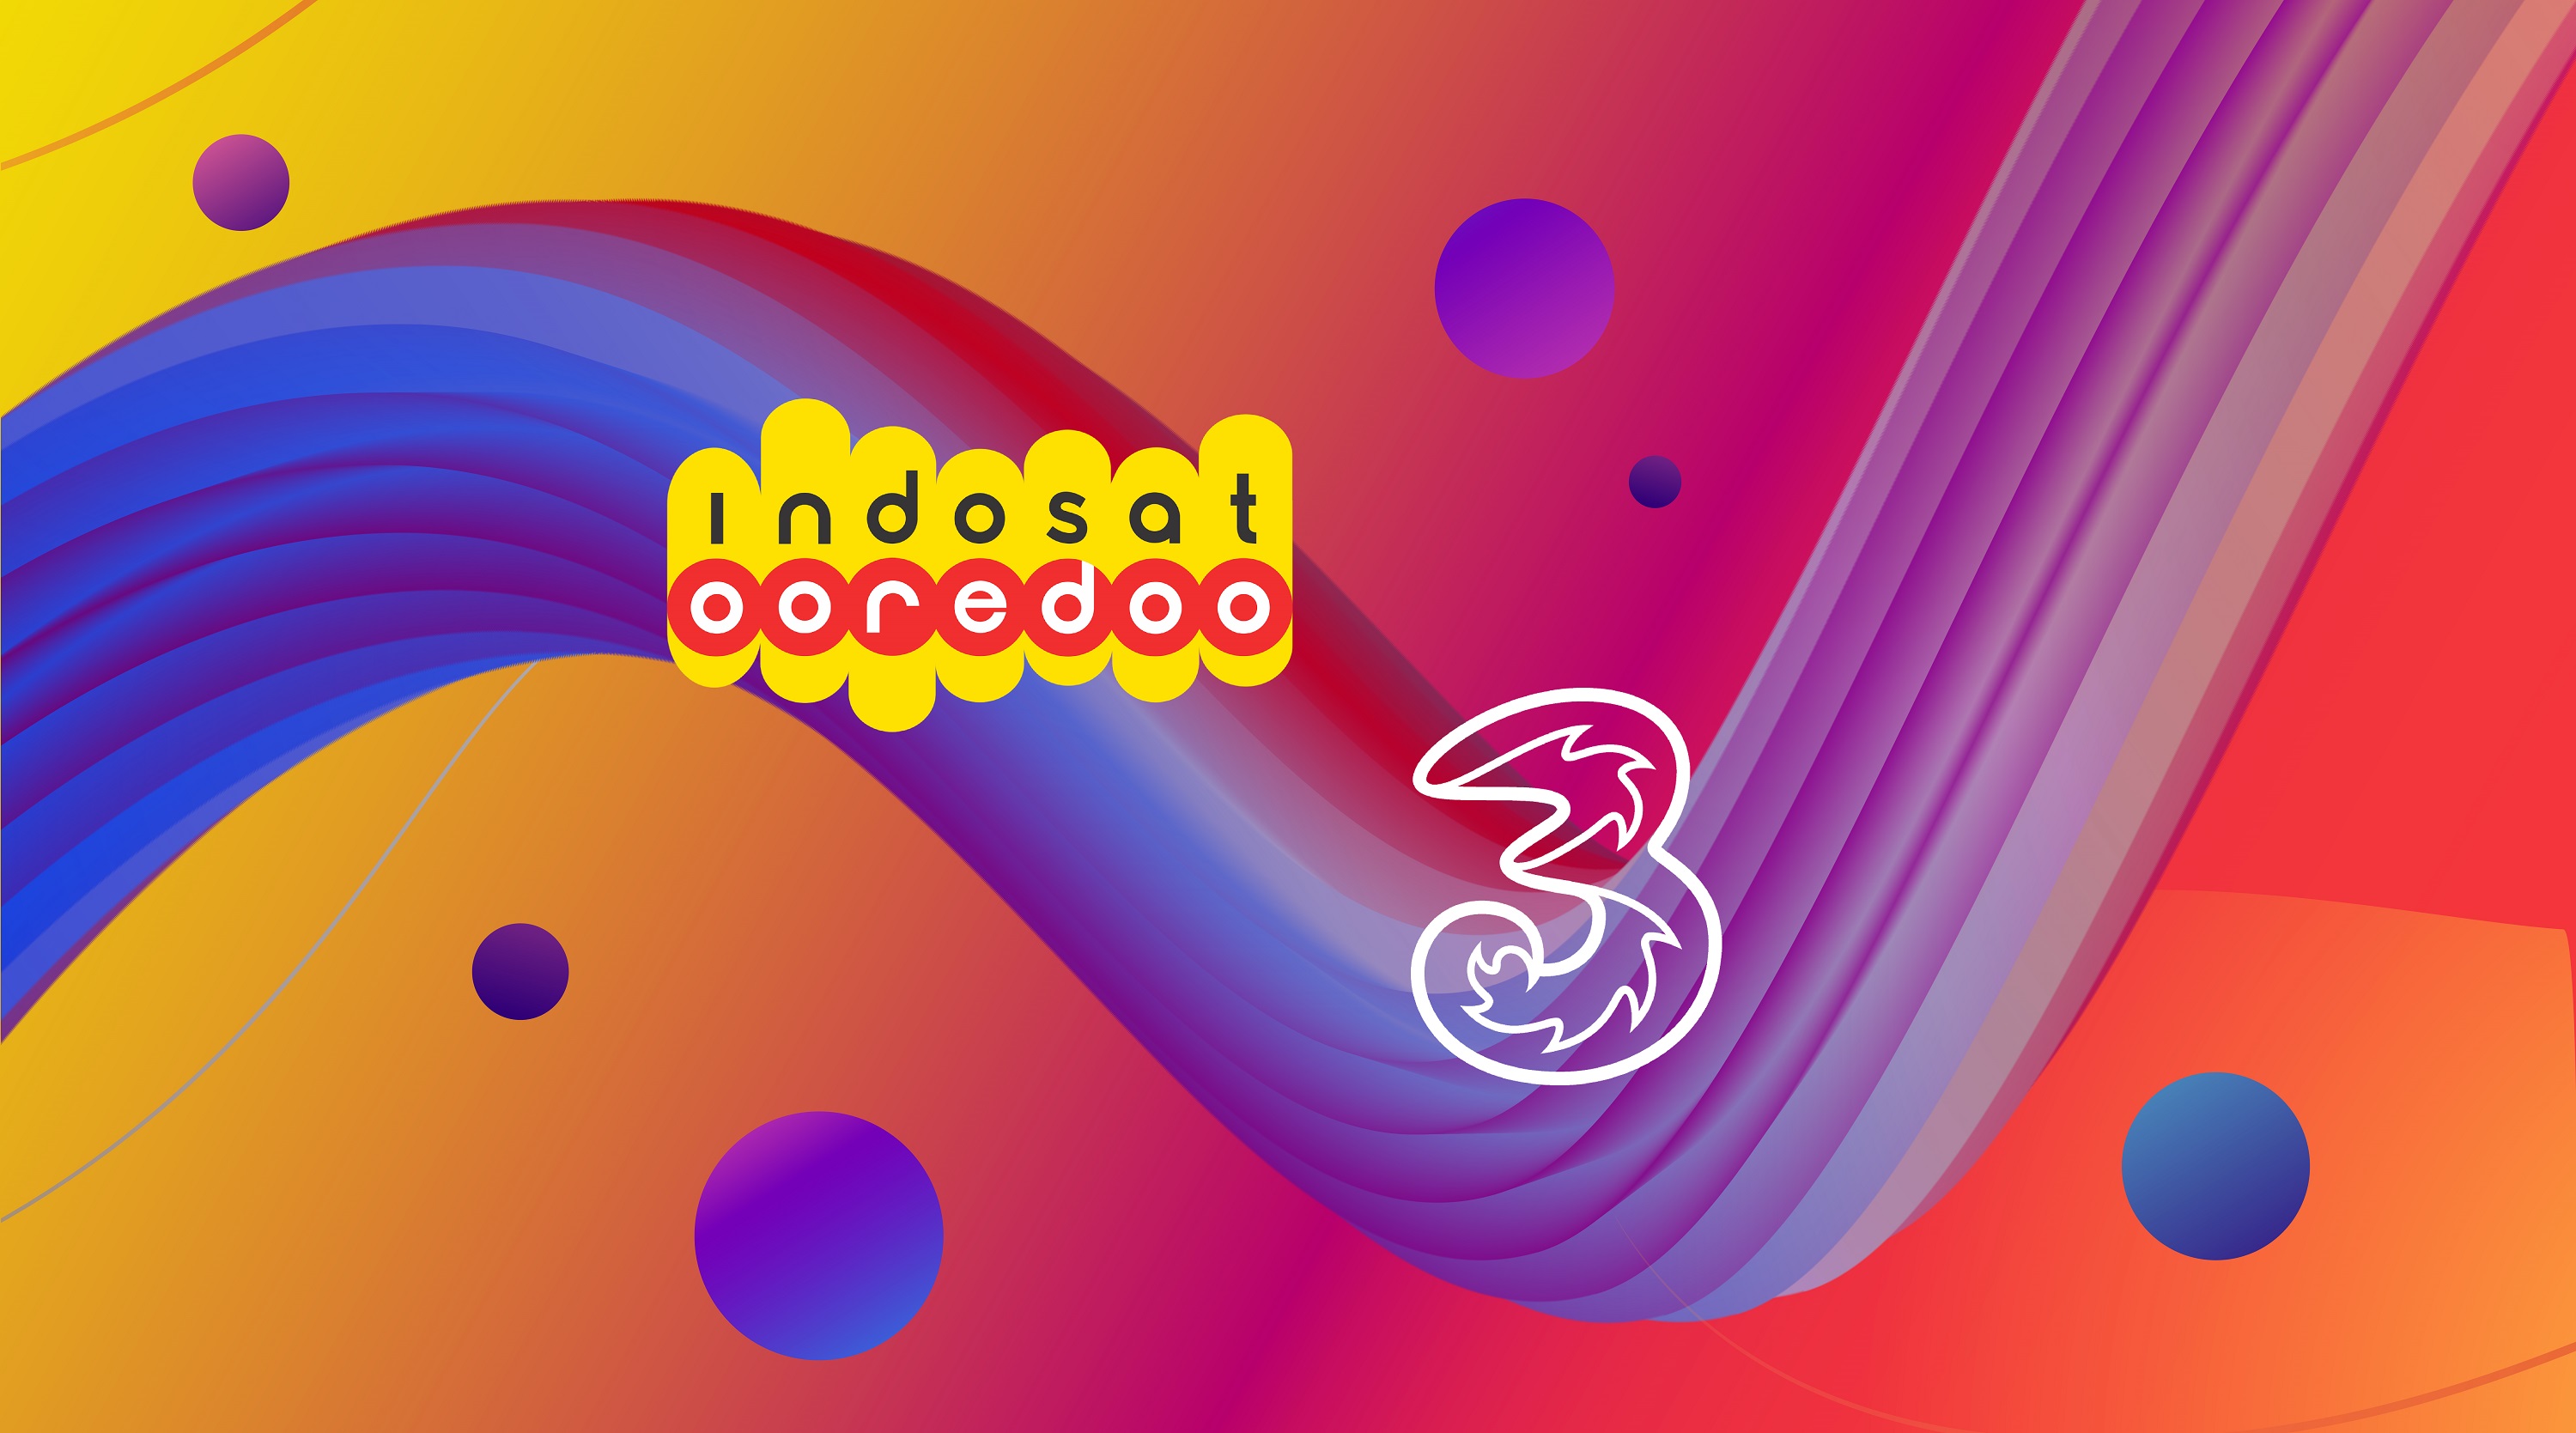 Indosat-Tri Bersatu, Apa Kata Pelanggan?